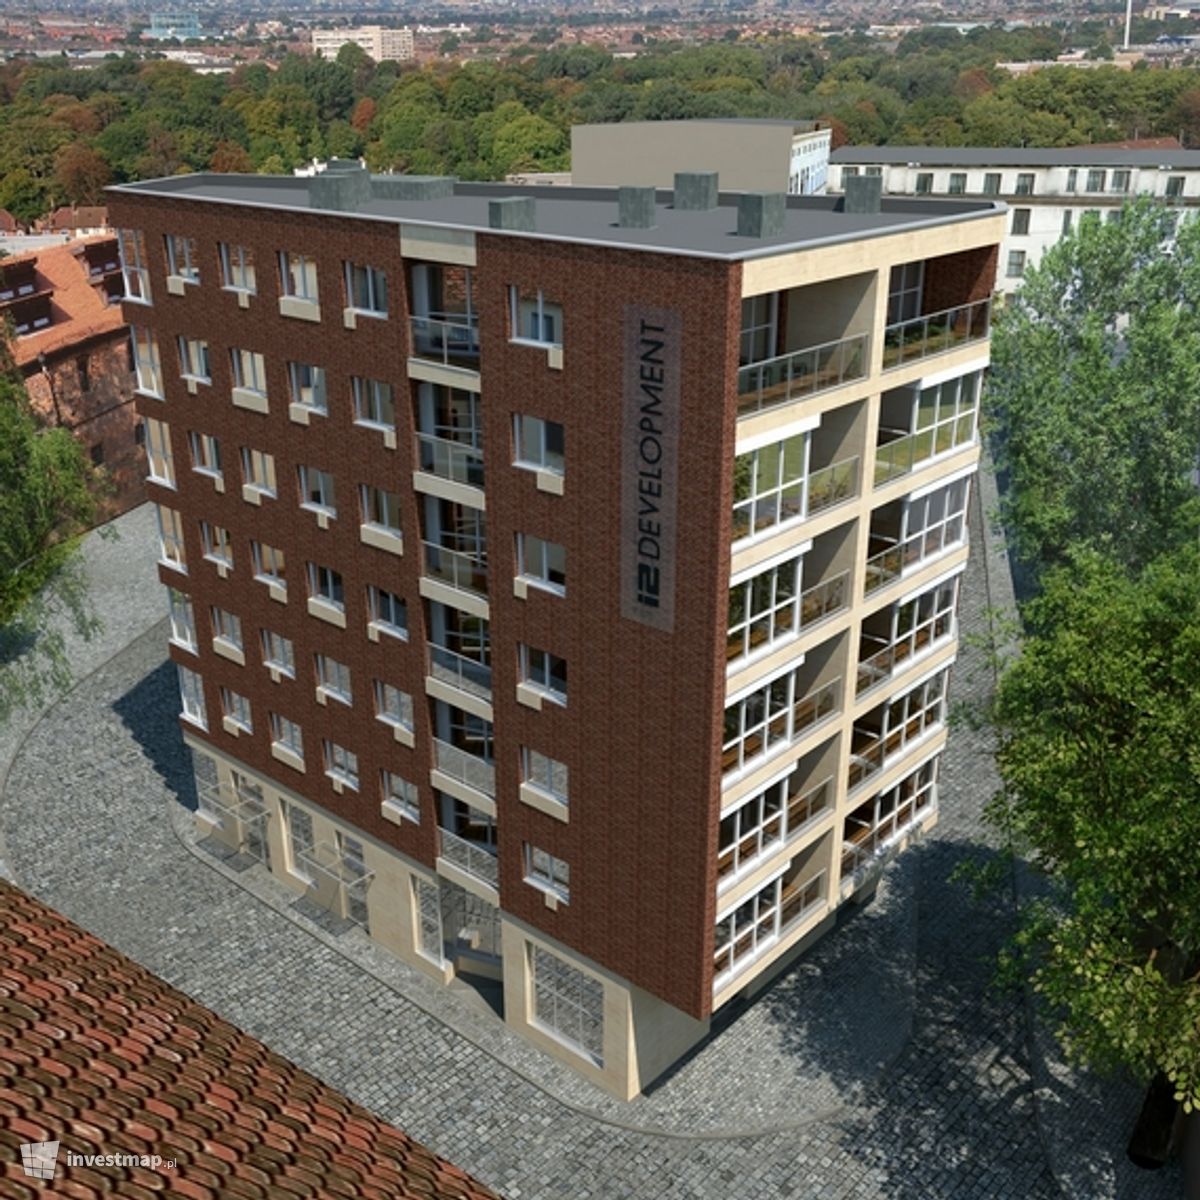 Wizualizacja [Wrocław] Apartamentowiec "Old Town Residence" dodał Jan Augustynowski